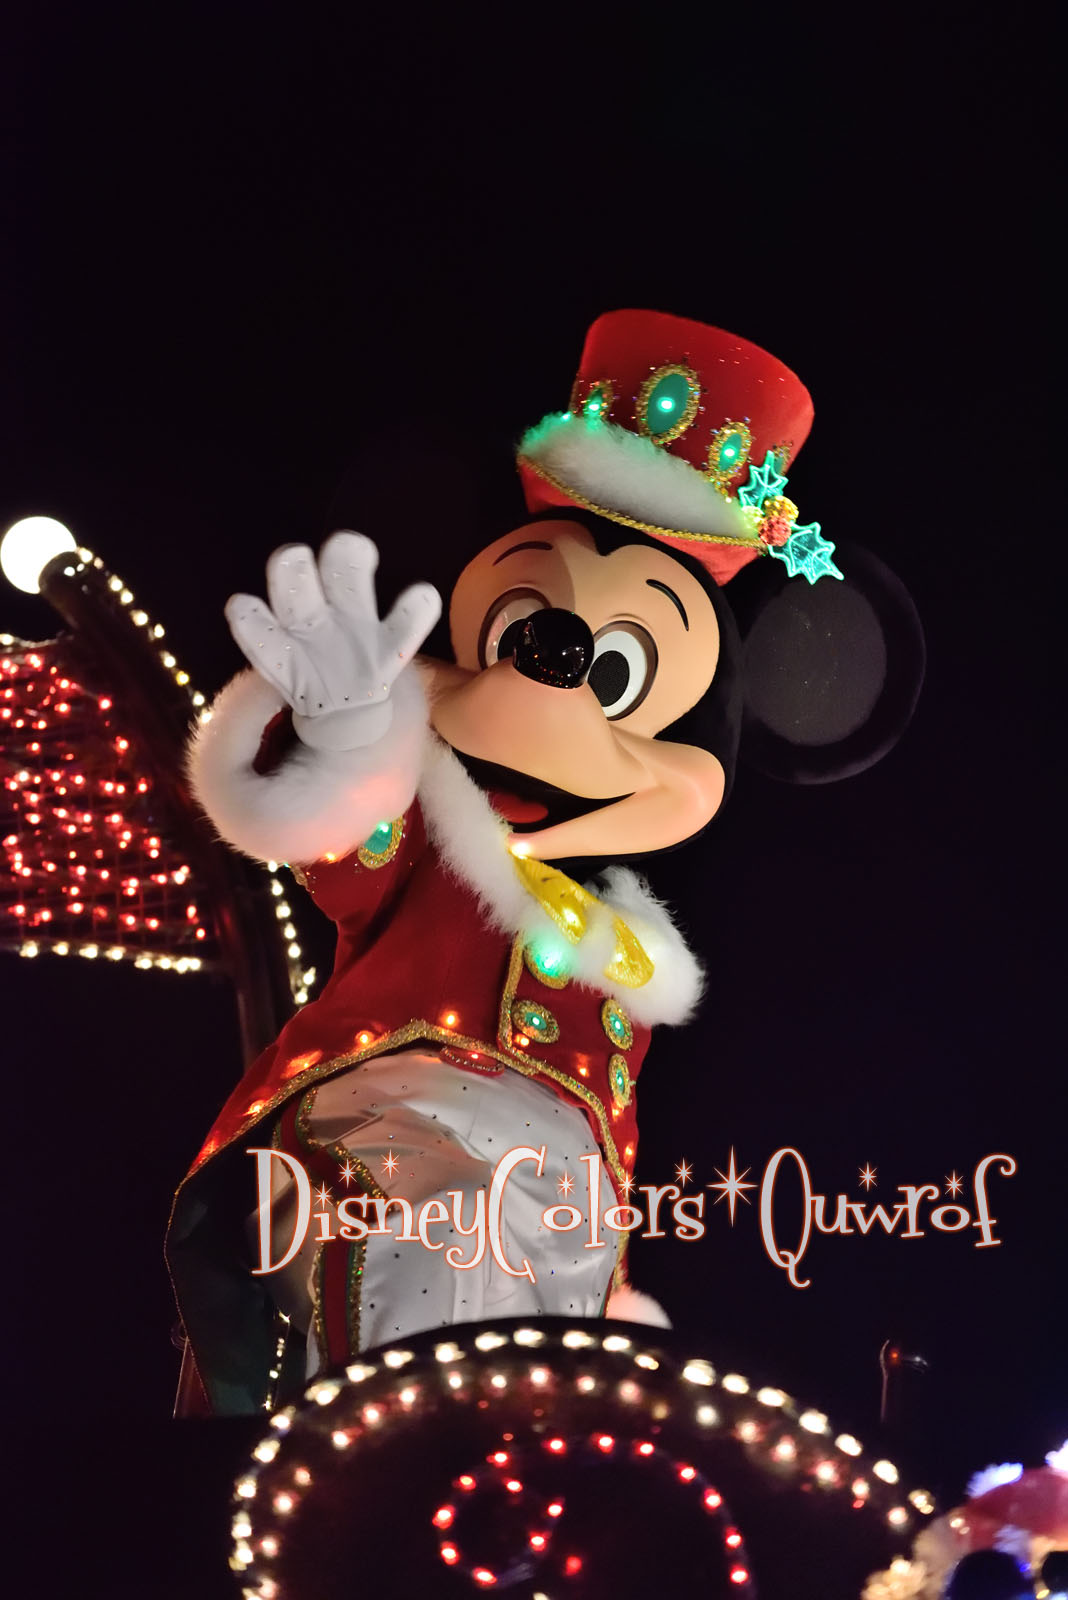 フロート順変更 新衣装でパレード再演 Tdl クリスマス ファンタジー16 詳細発表 Disney Colors Blog